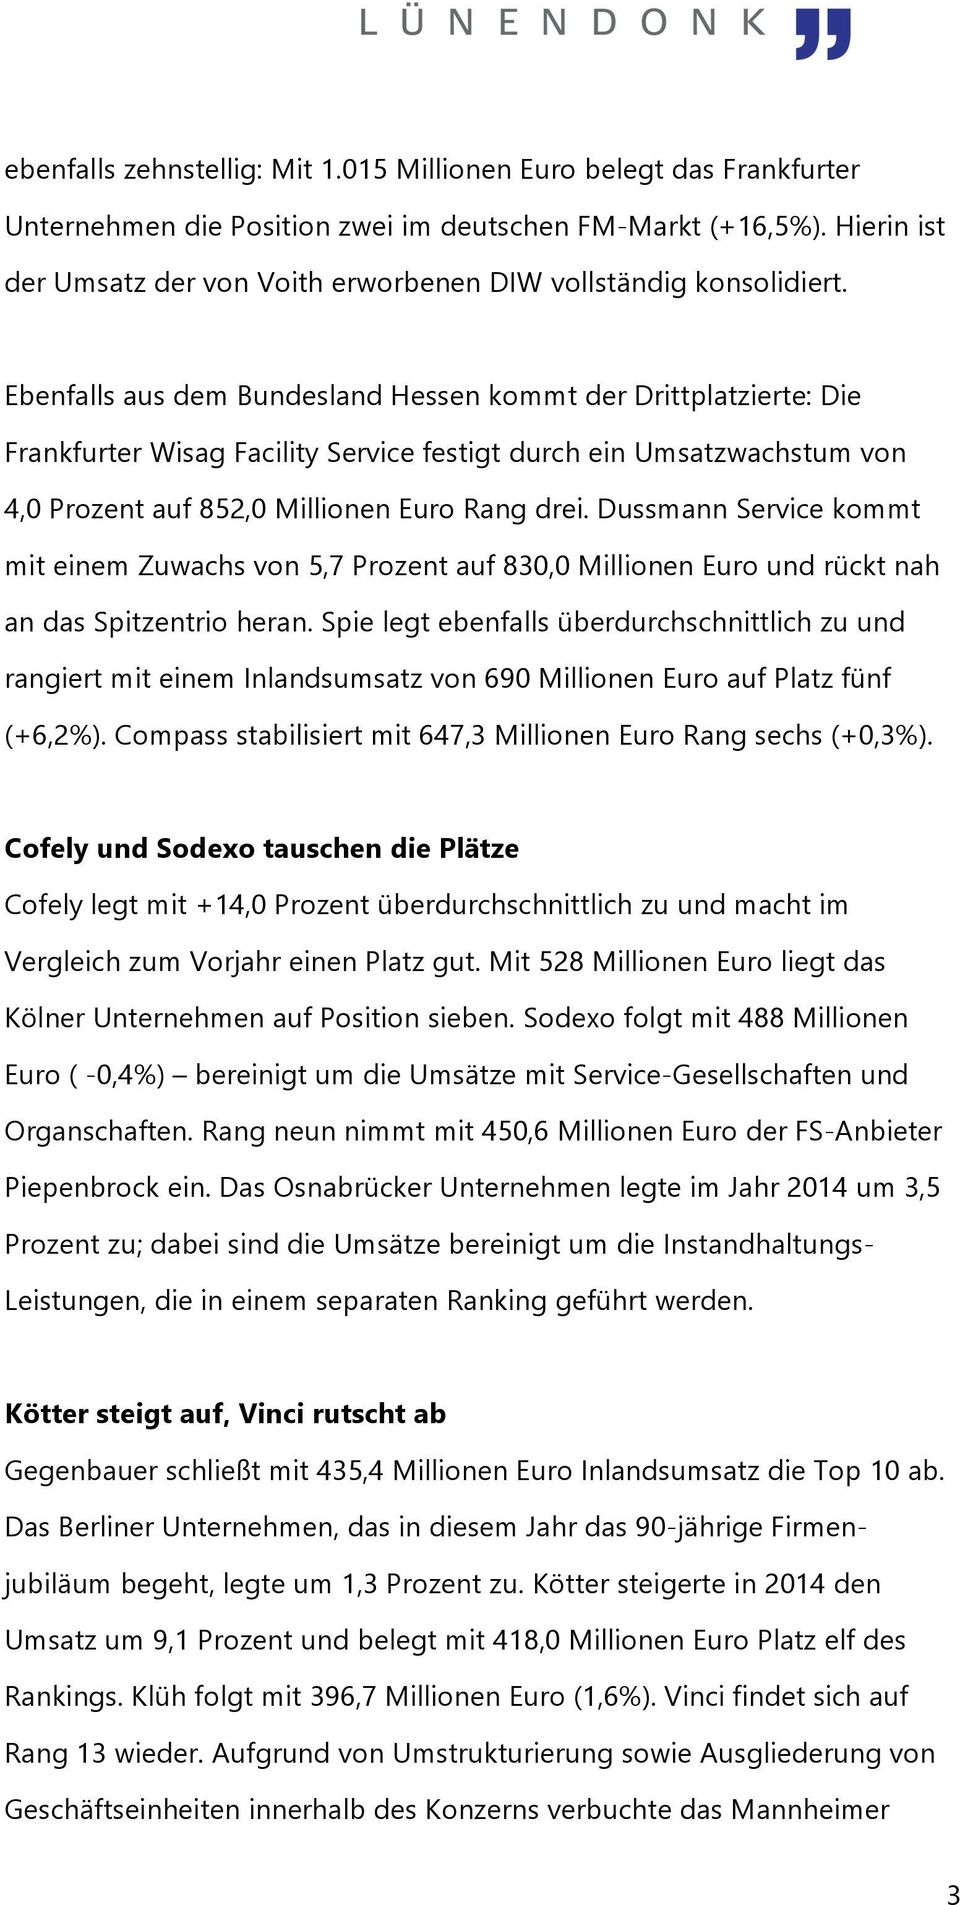 Ebenfalls aus dem Bundesland Hessen kommt der Drittplatzierte: Die Frankfurter Wisag Facility Service festigt durch ein Umsatzwachstum von 4,0 Prozent auf 852,0 Millionen Euro Rang drei.